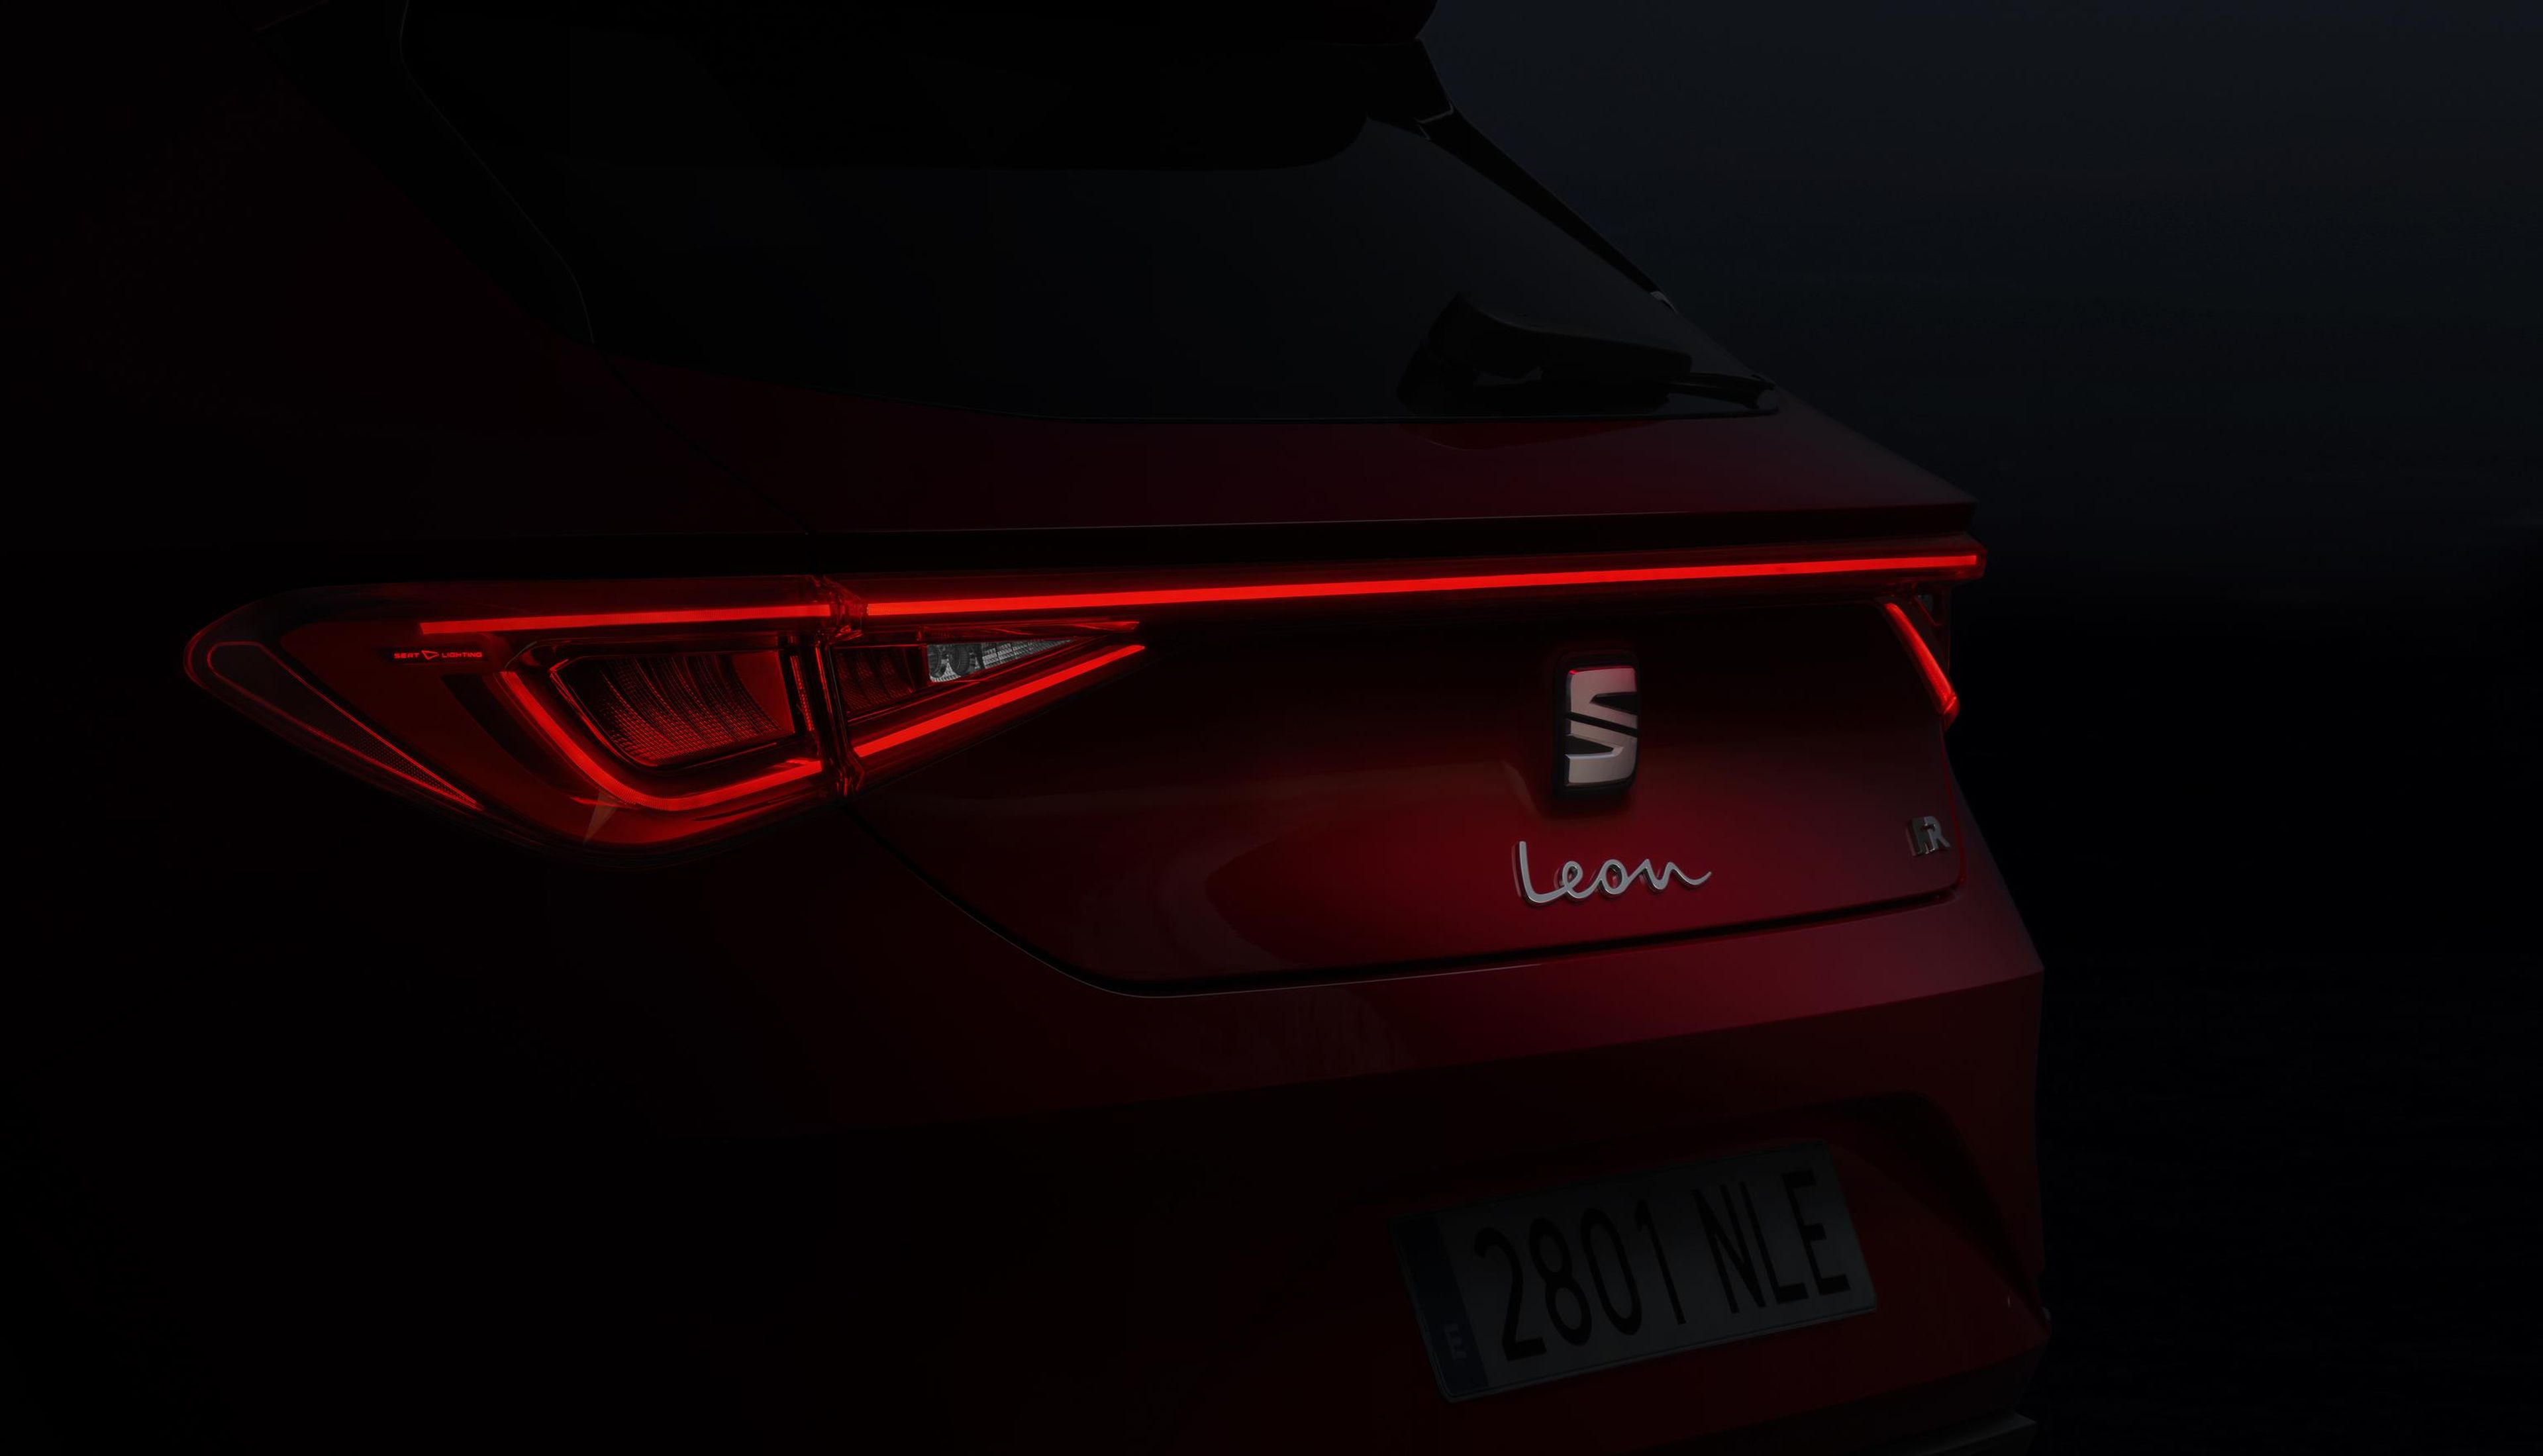 Una línea de LED recorre toda la zaga del nuevo Seat León.